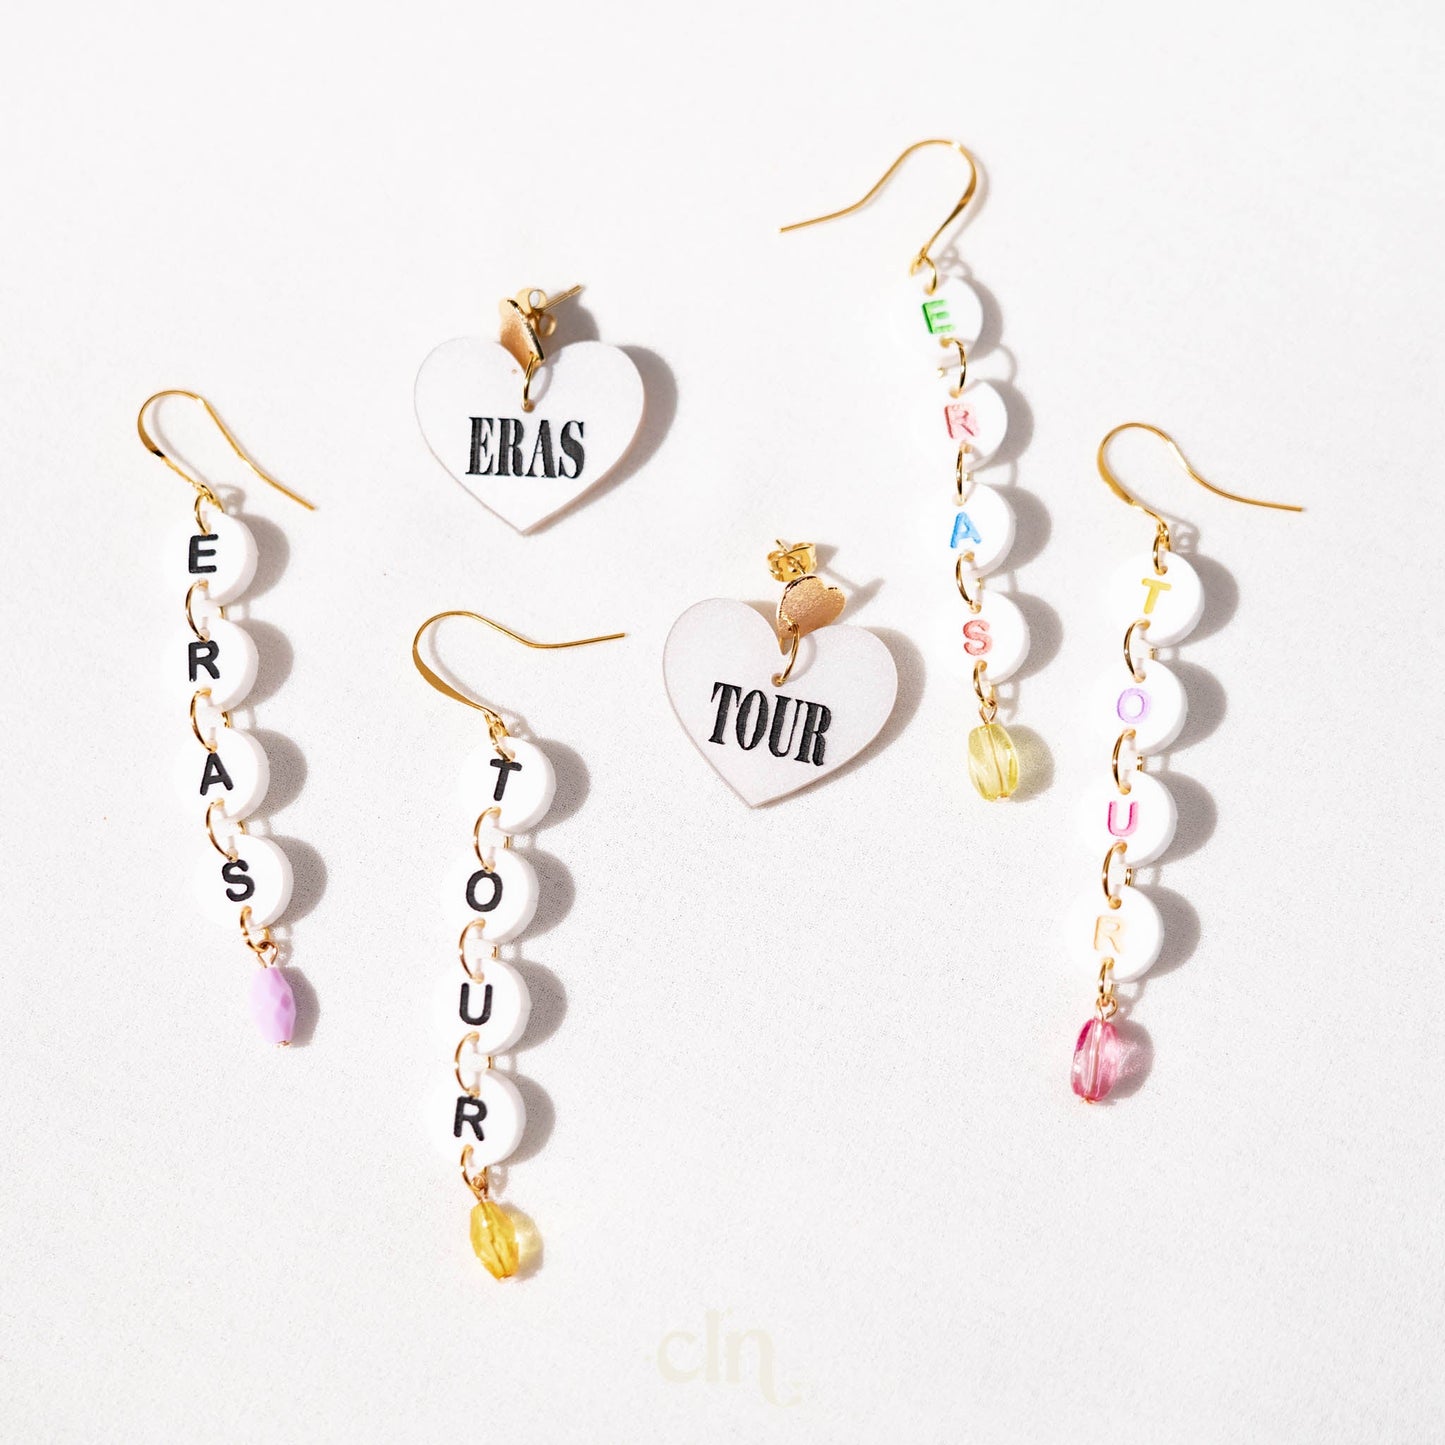 Make the friendship bracelets - Folklore Taylor Swift earrings - Earrings - CLN Atelier